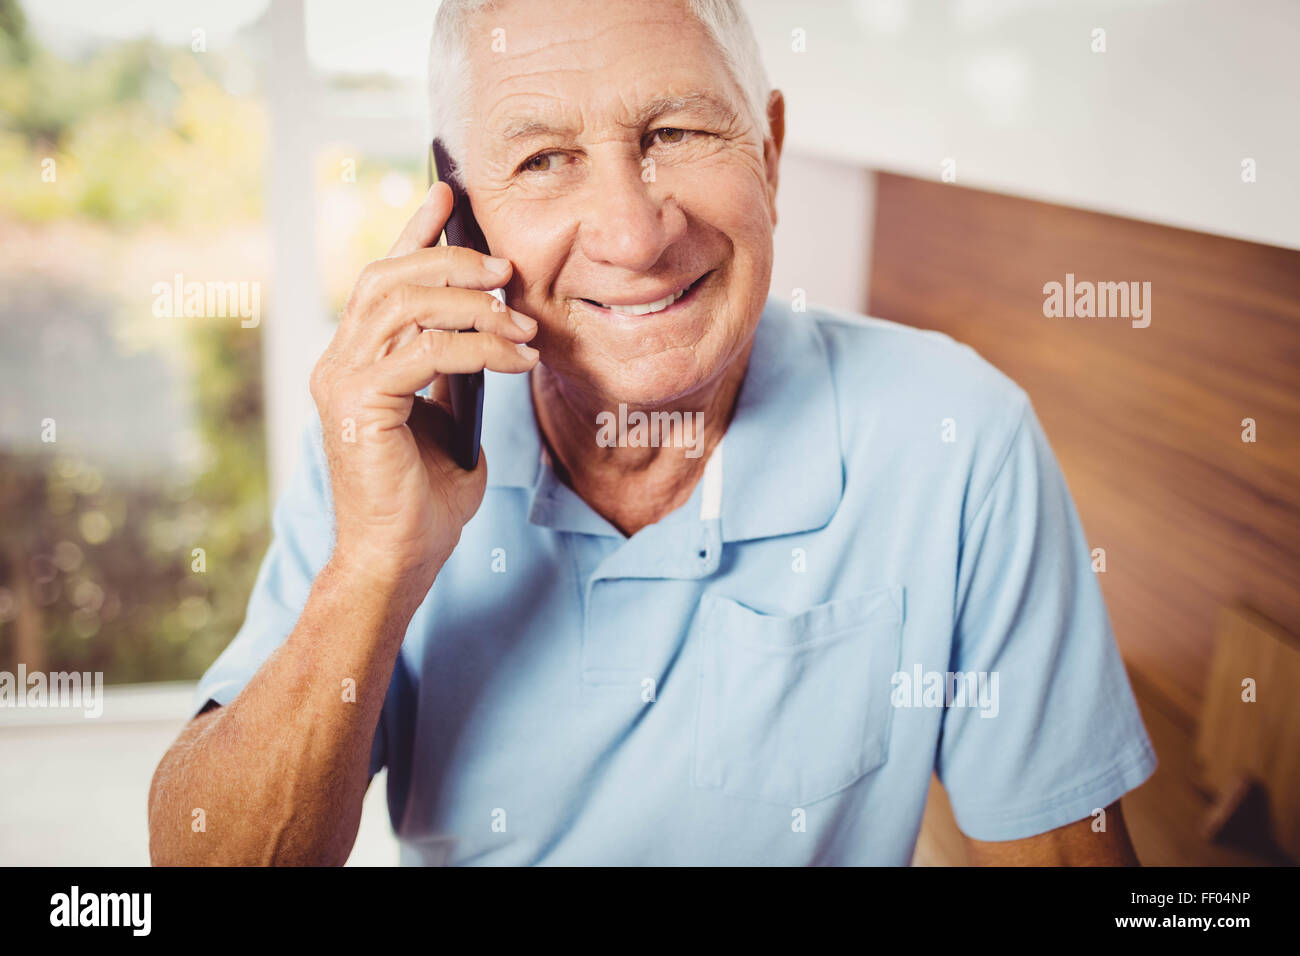 Smiling senior homme sur un appel téléphonique Banque D'Images